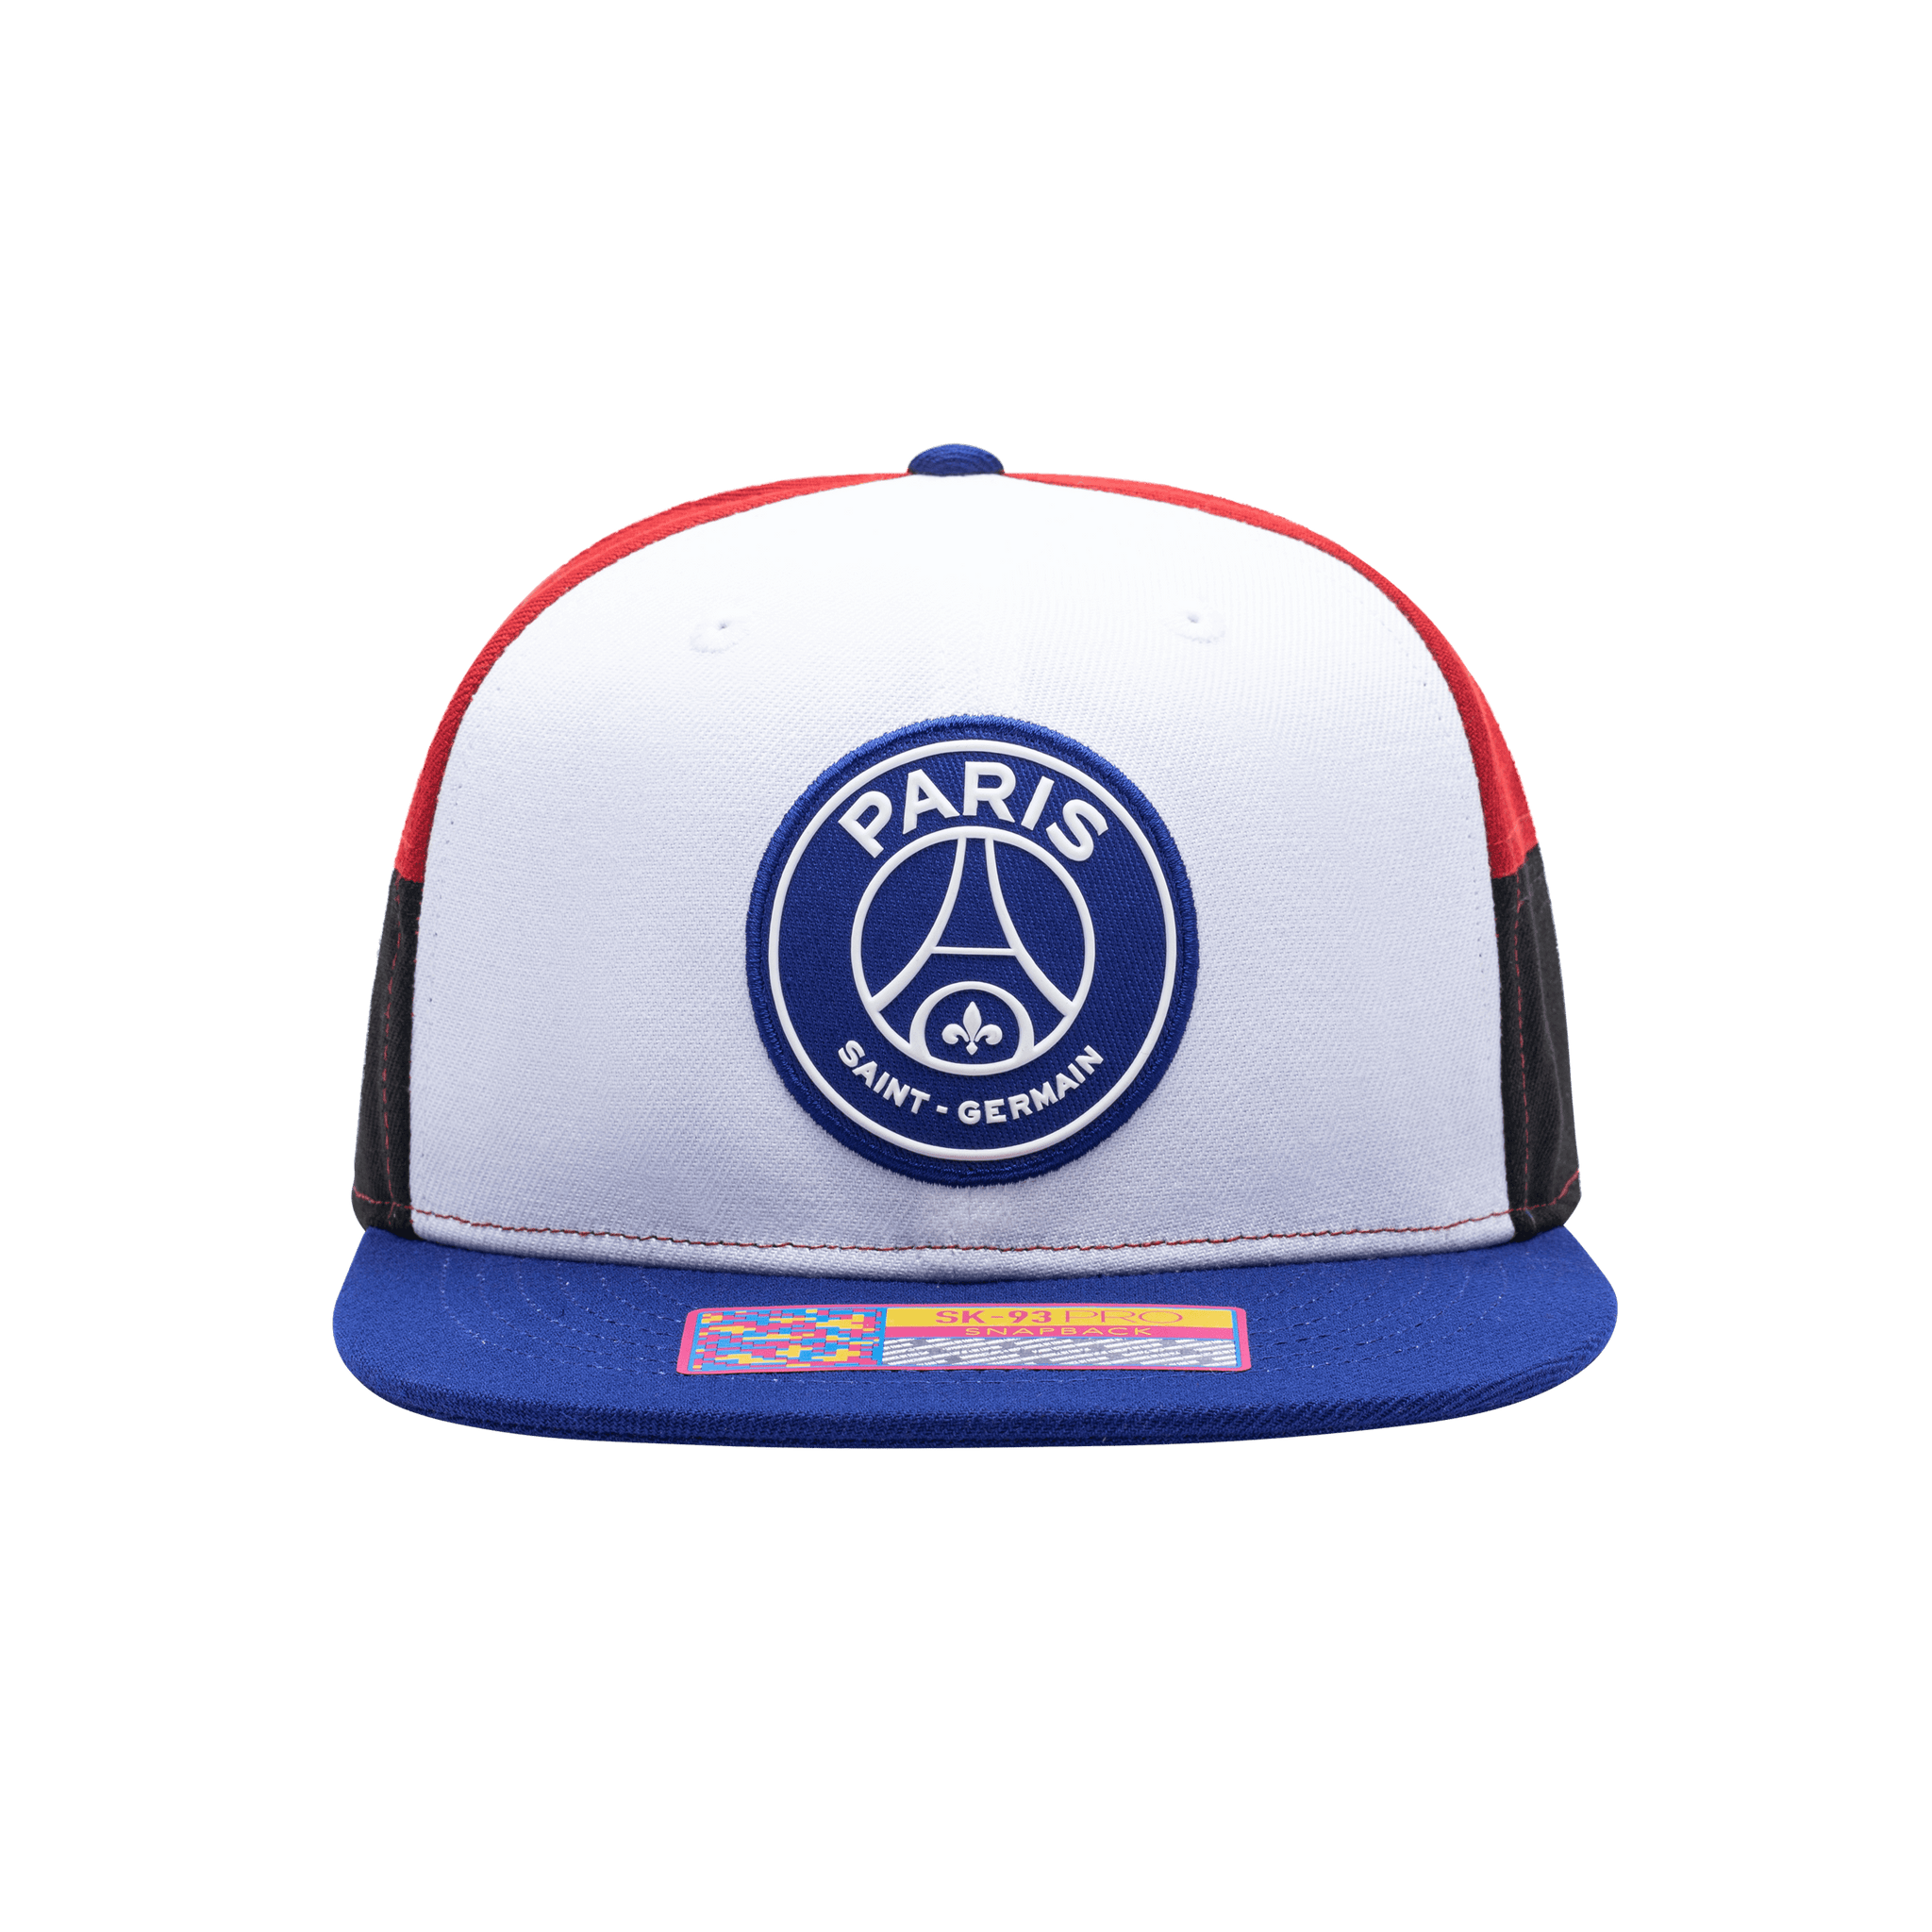 Paris Saint-Germain Chroma Snapback Hat